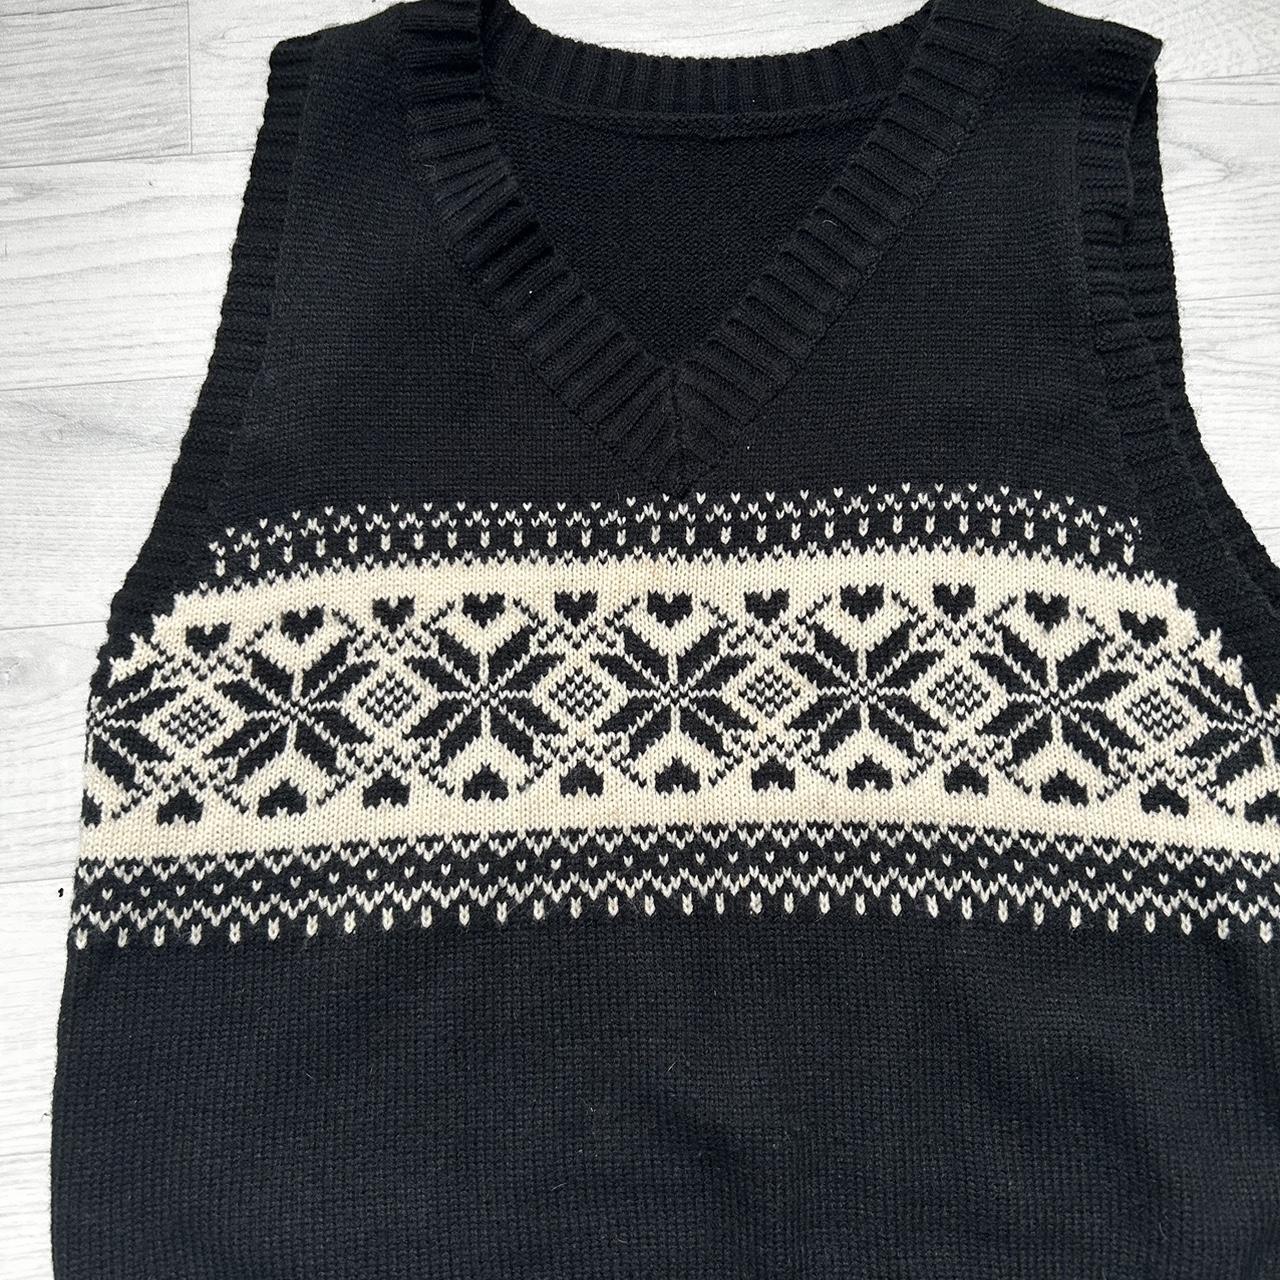 80’s Style Black Sweater Vest Worn A Few Times Size... - Depop